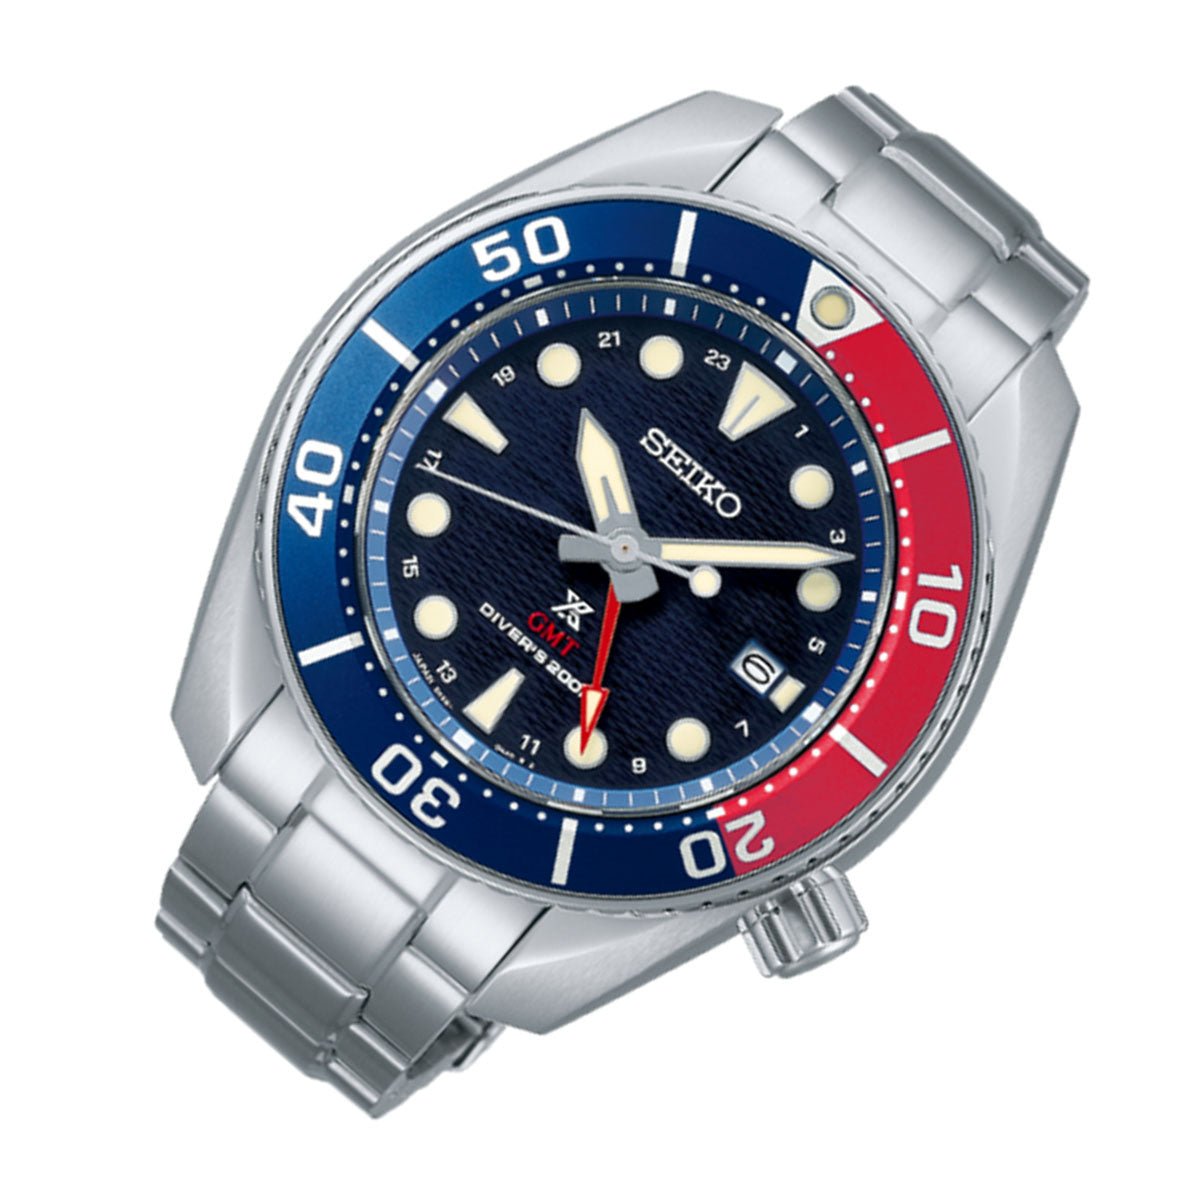 Seiko JDM Prospex GMT Sumo Solar Pepsi Bezel Divers 200m Watch SBPK005 -Seiko